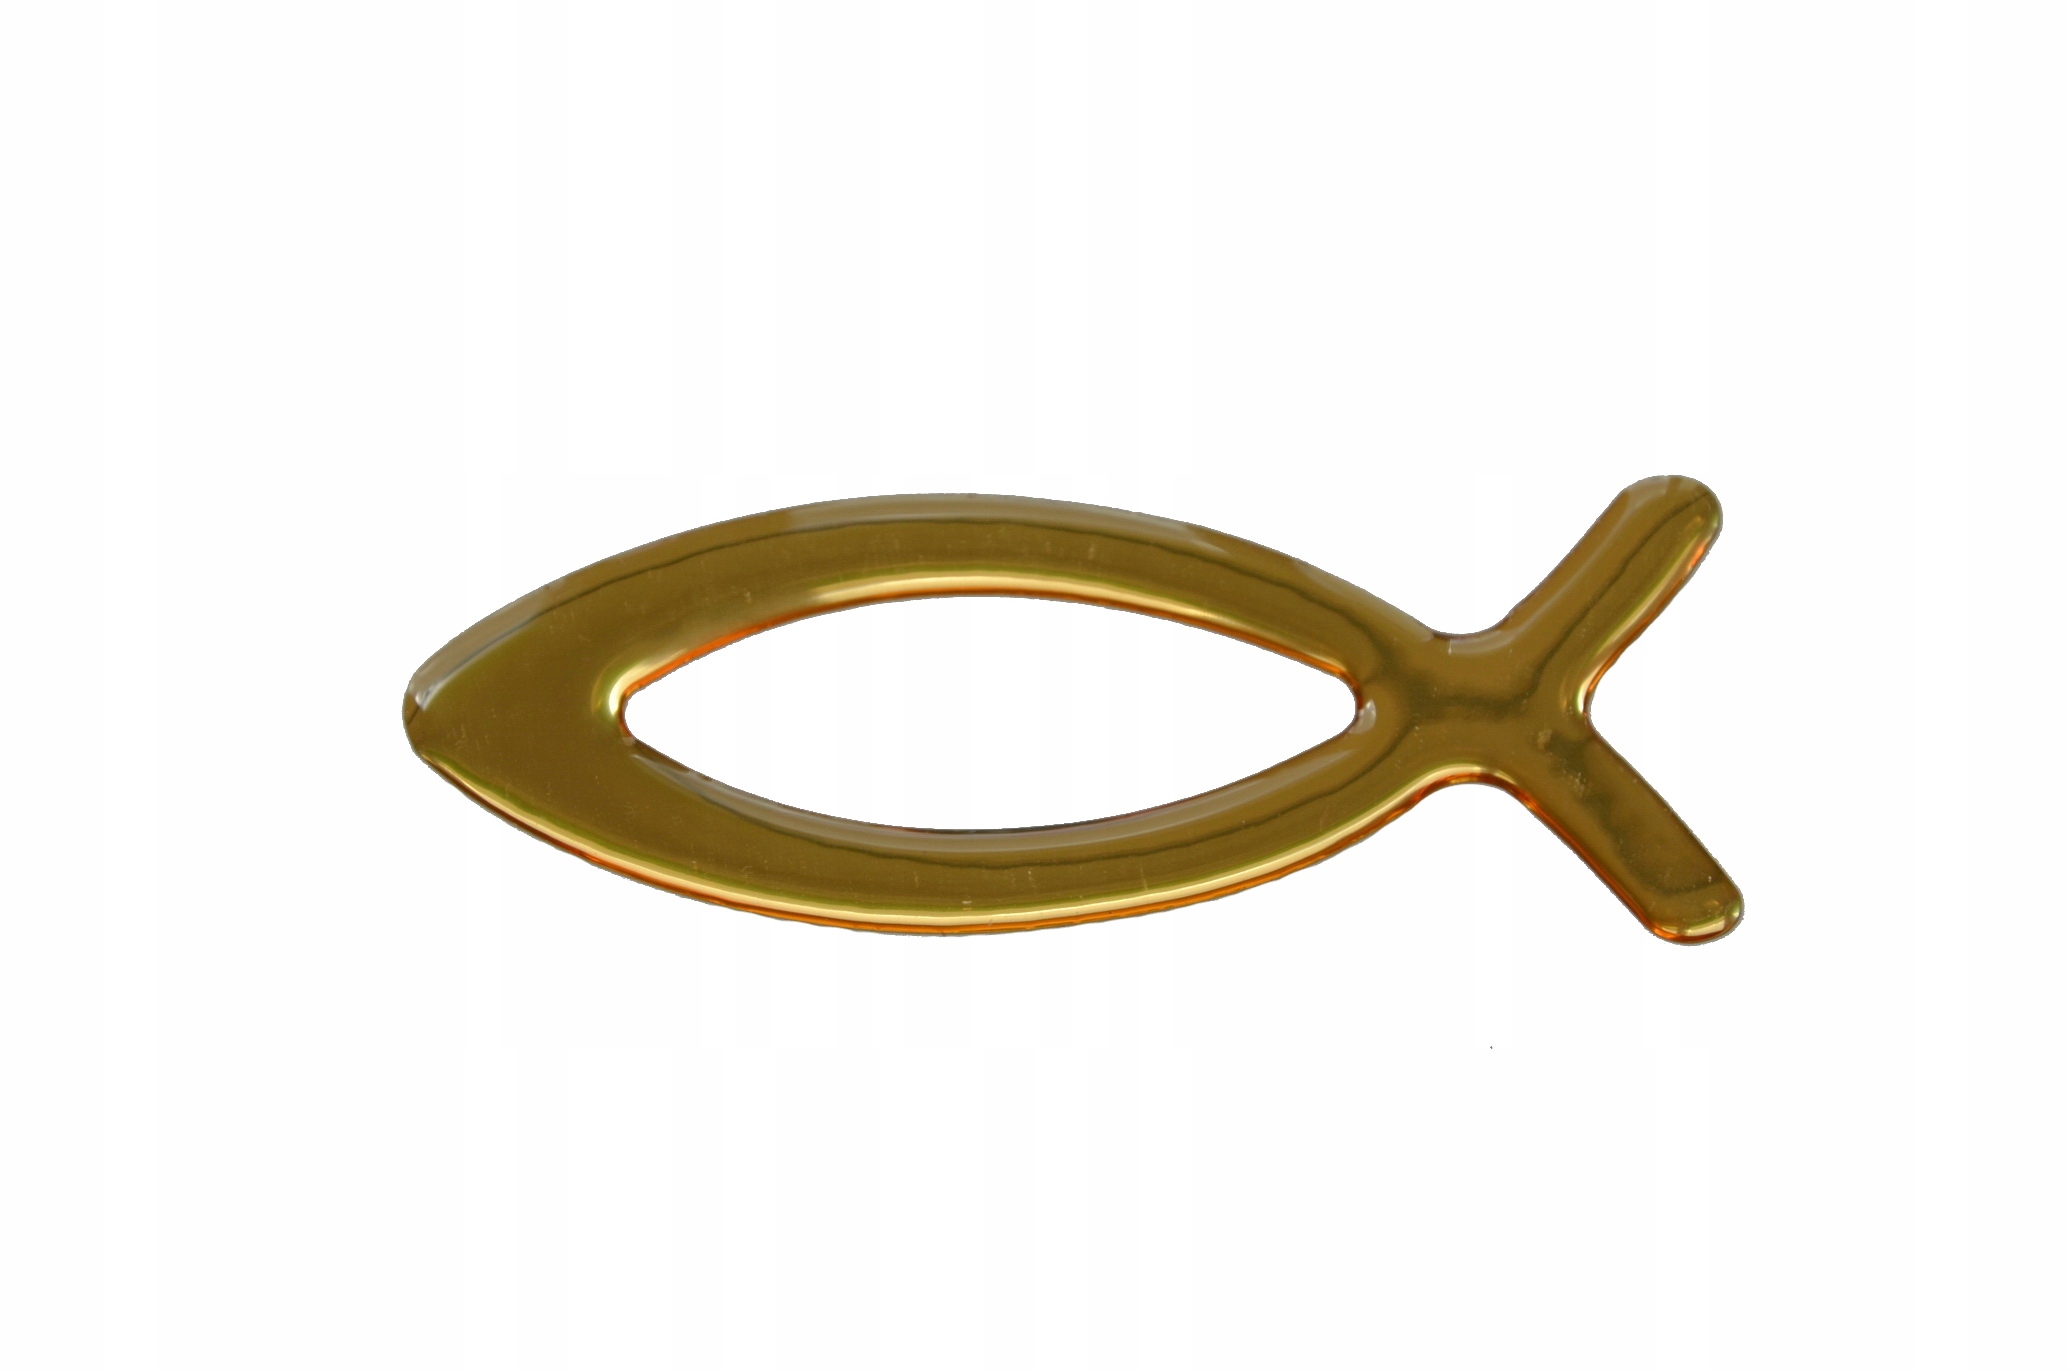 Naklejka - rybka chrześcijańska - Ichtys - Złota 8 cm